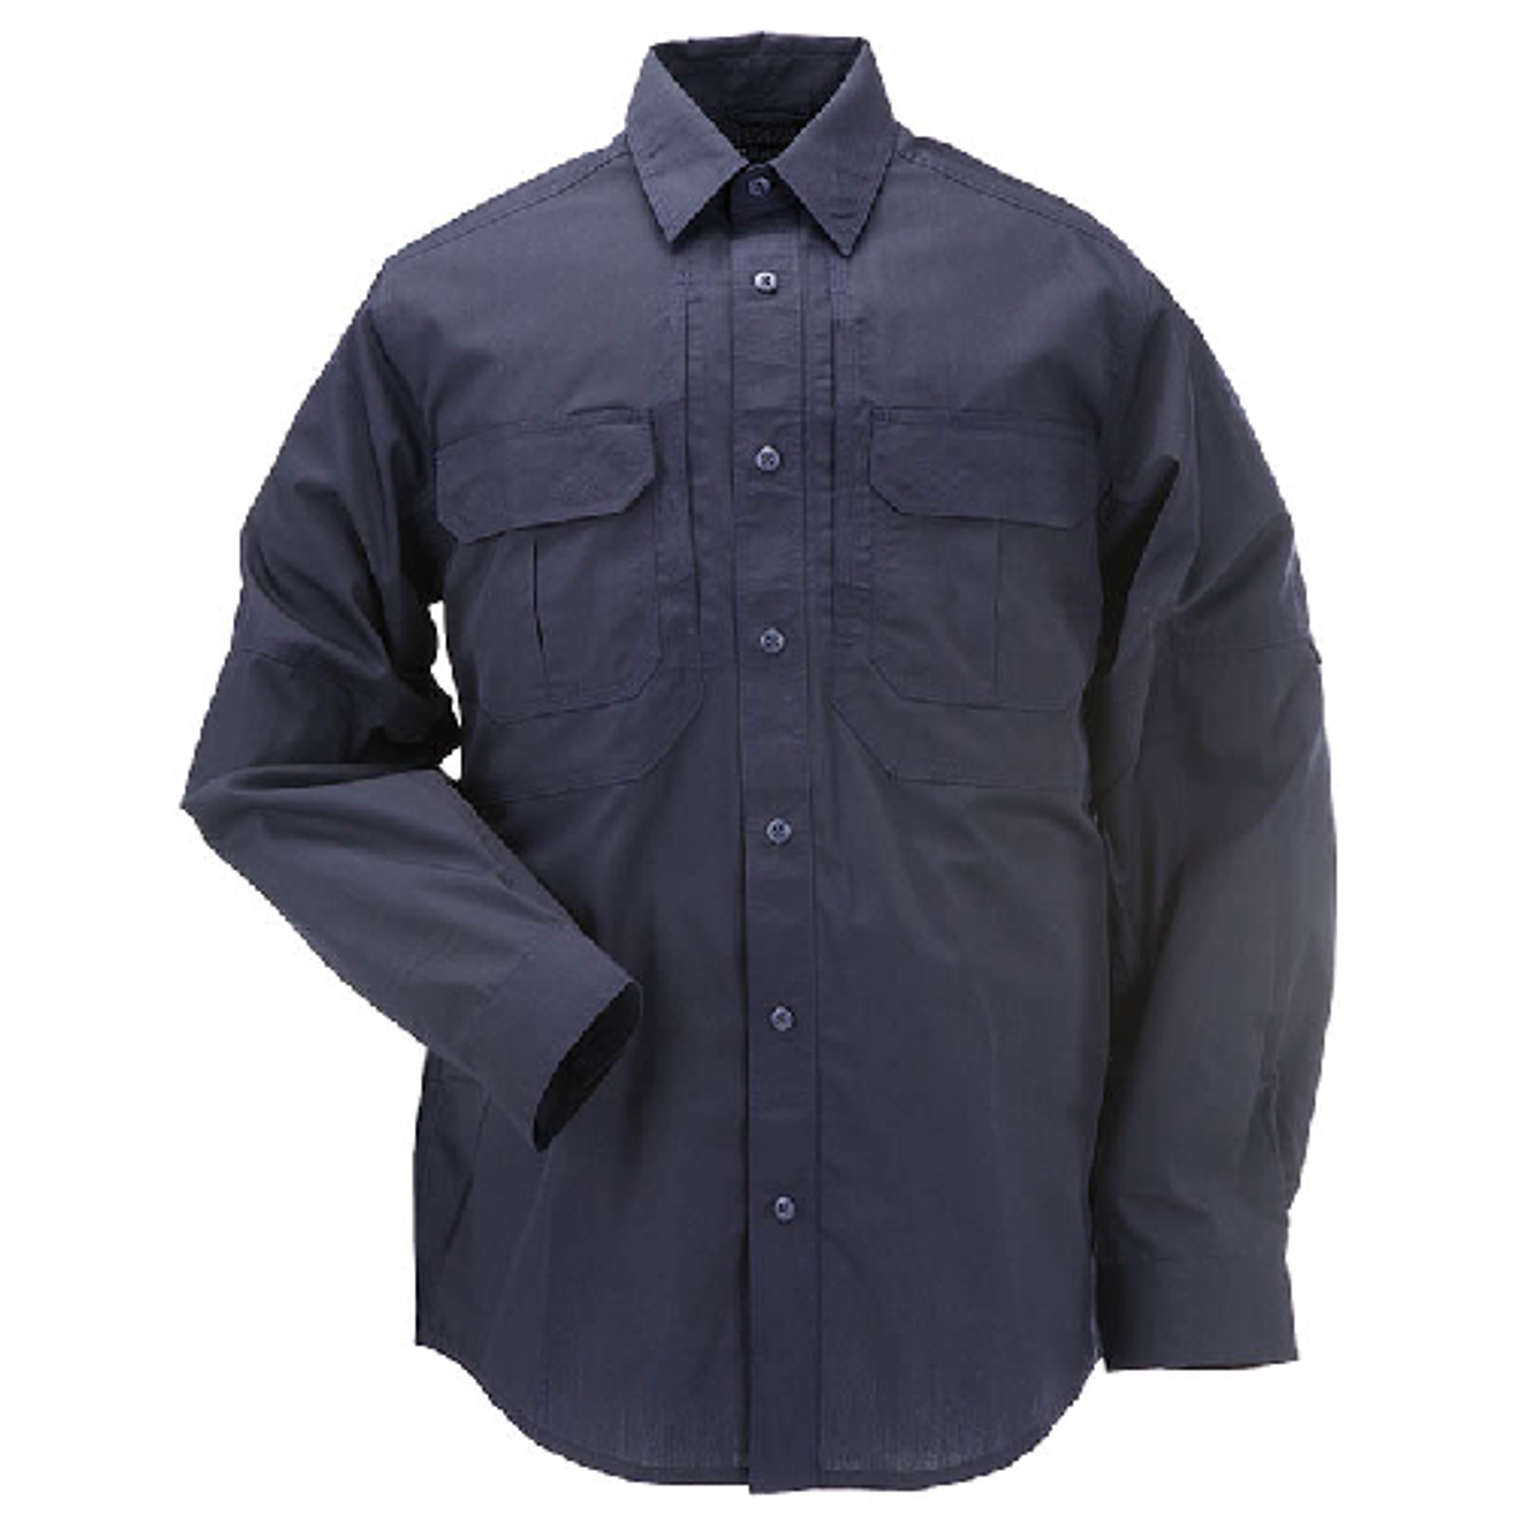 Taclite Pro L/s Shirt - KR5-72175724XL